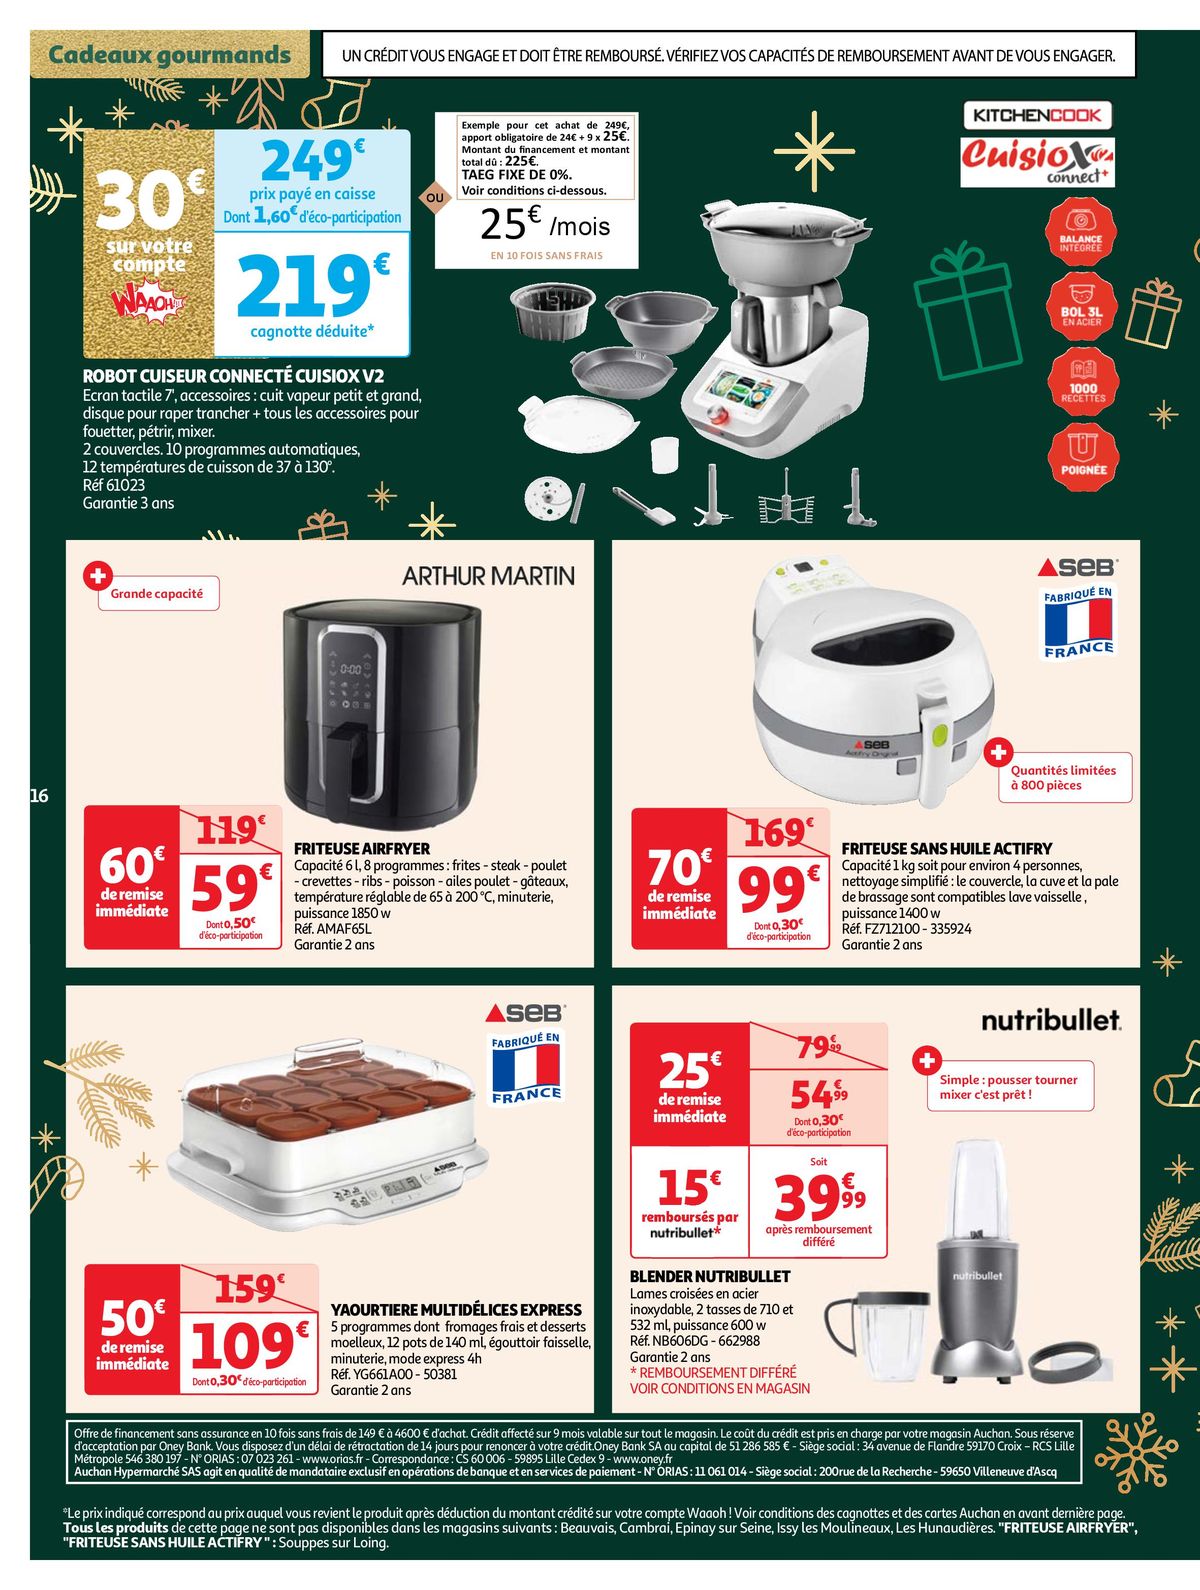 Catalogue Le Guide de cadeaux de Noël, page 00016